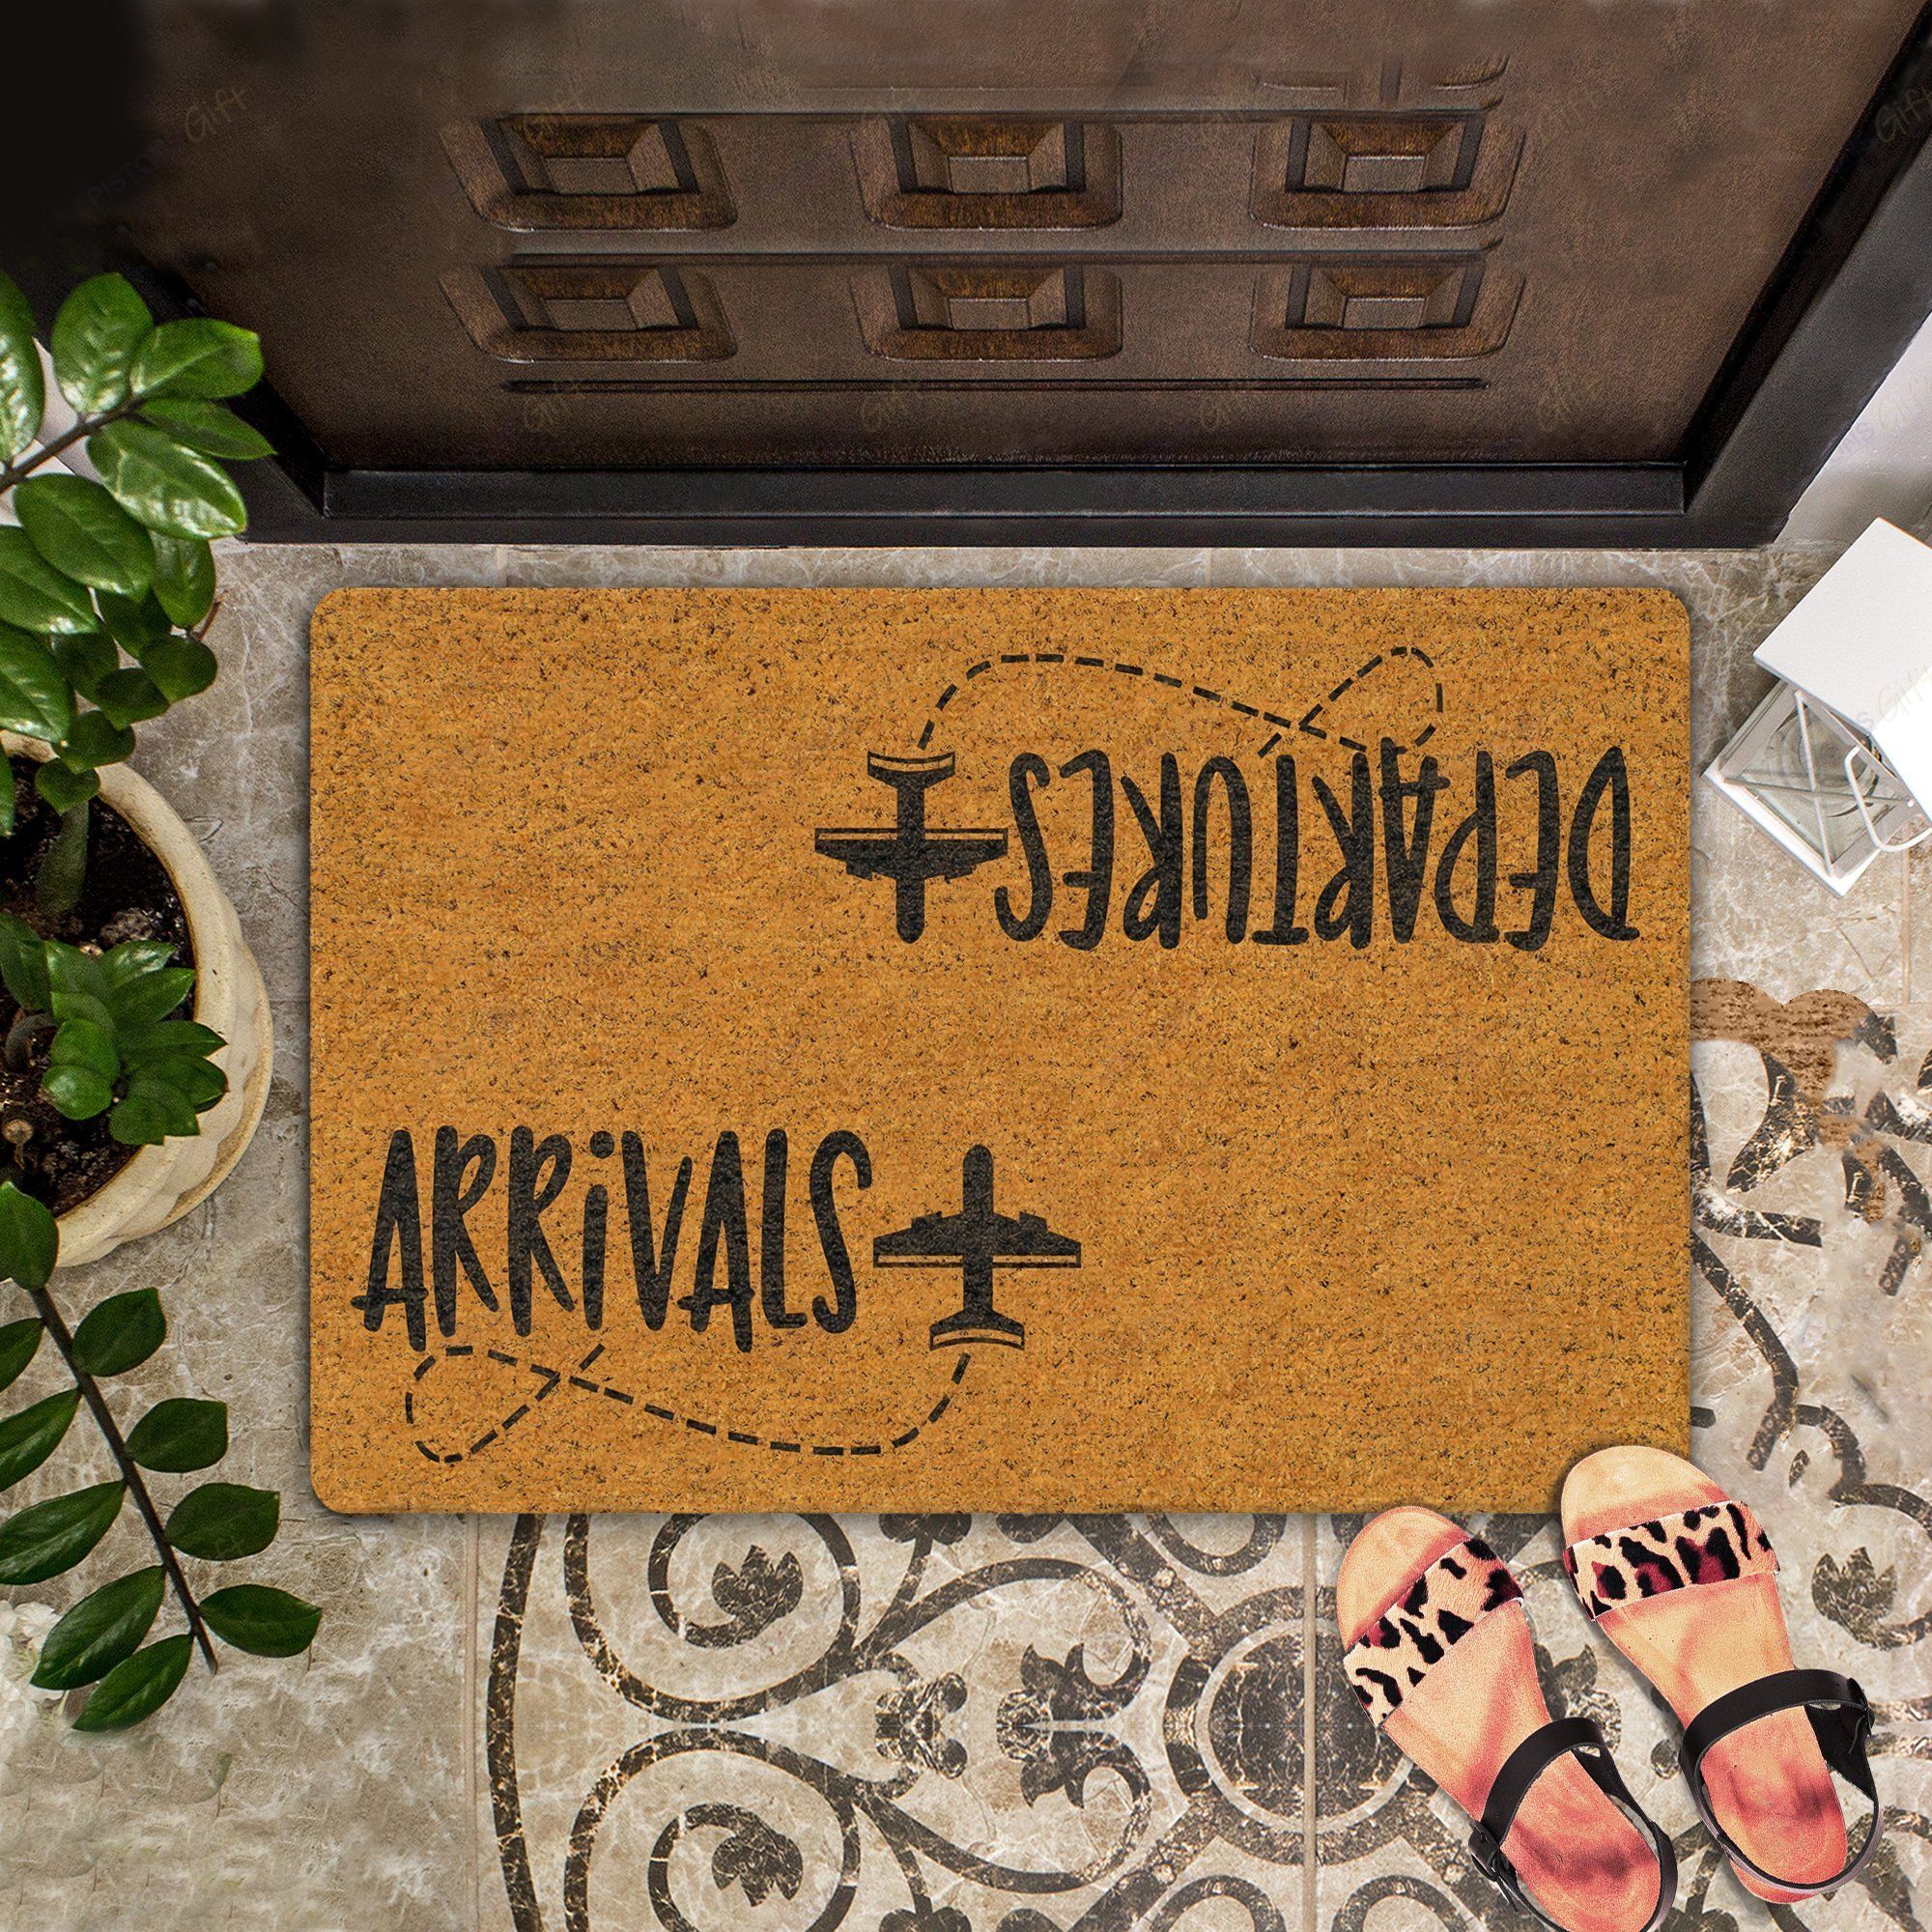 Arrivals - Departures All Over Printing Doormat - PoshmarkStore